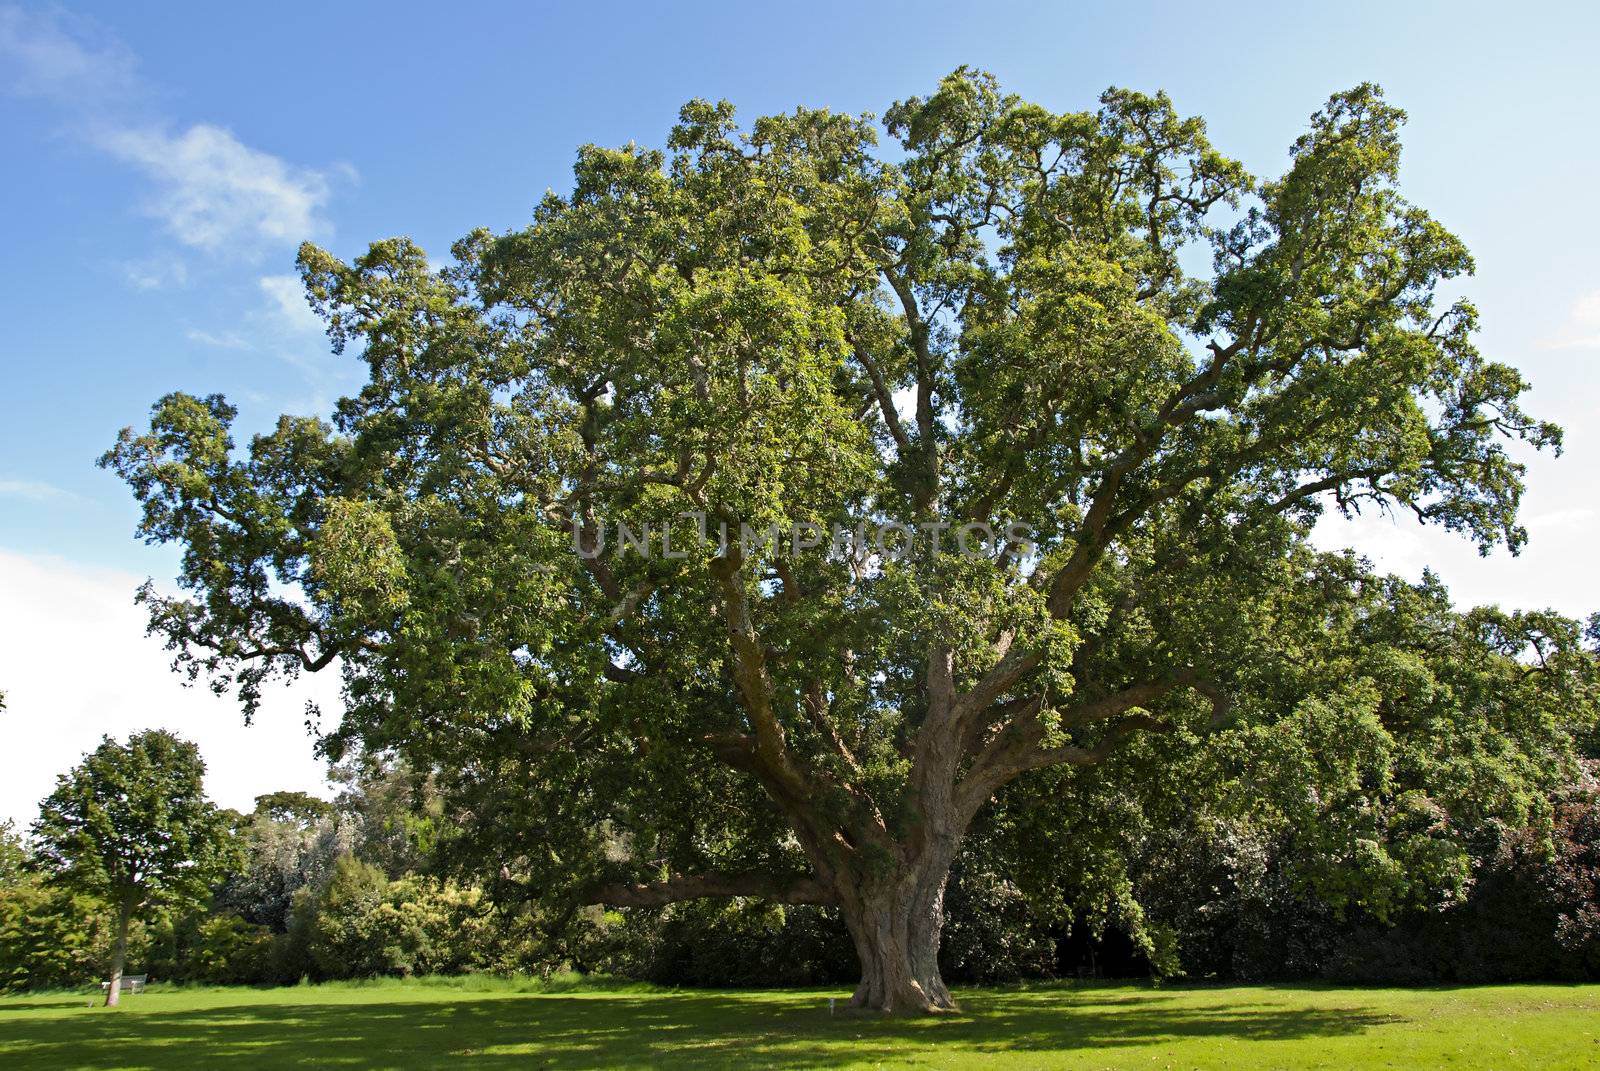 Cork Oak Tree by d40xboy